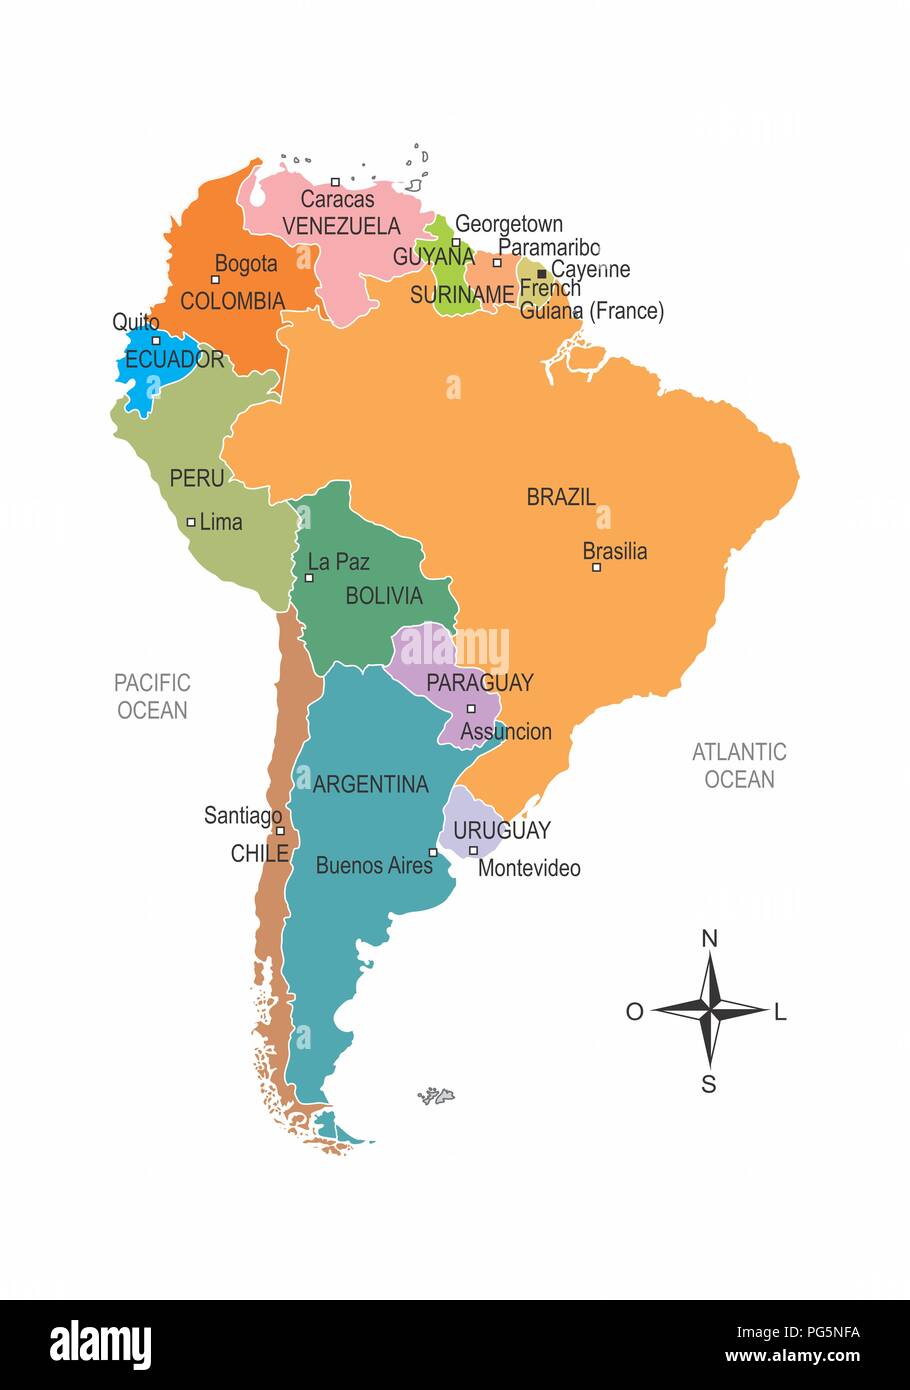 Colorido mapa de América del Sur con división de los países y sus